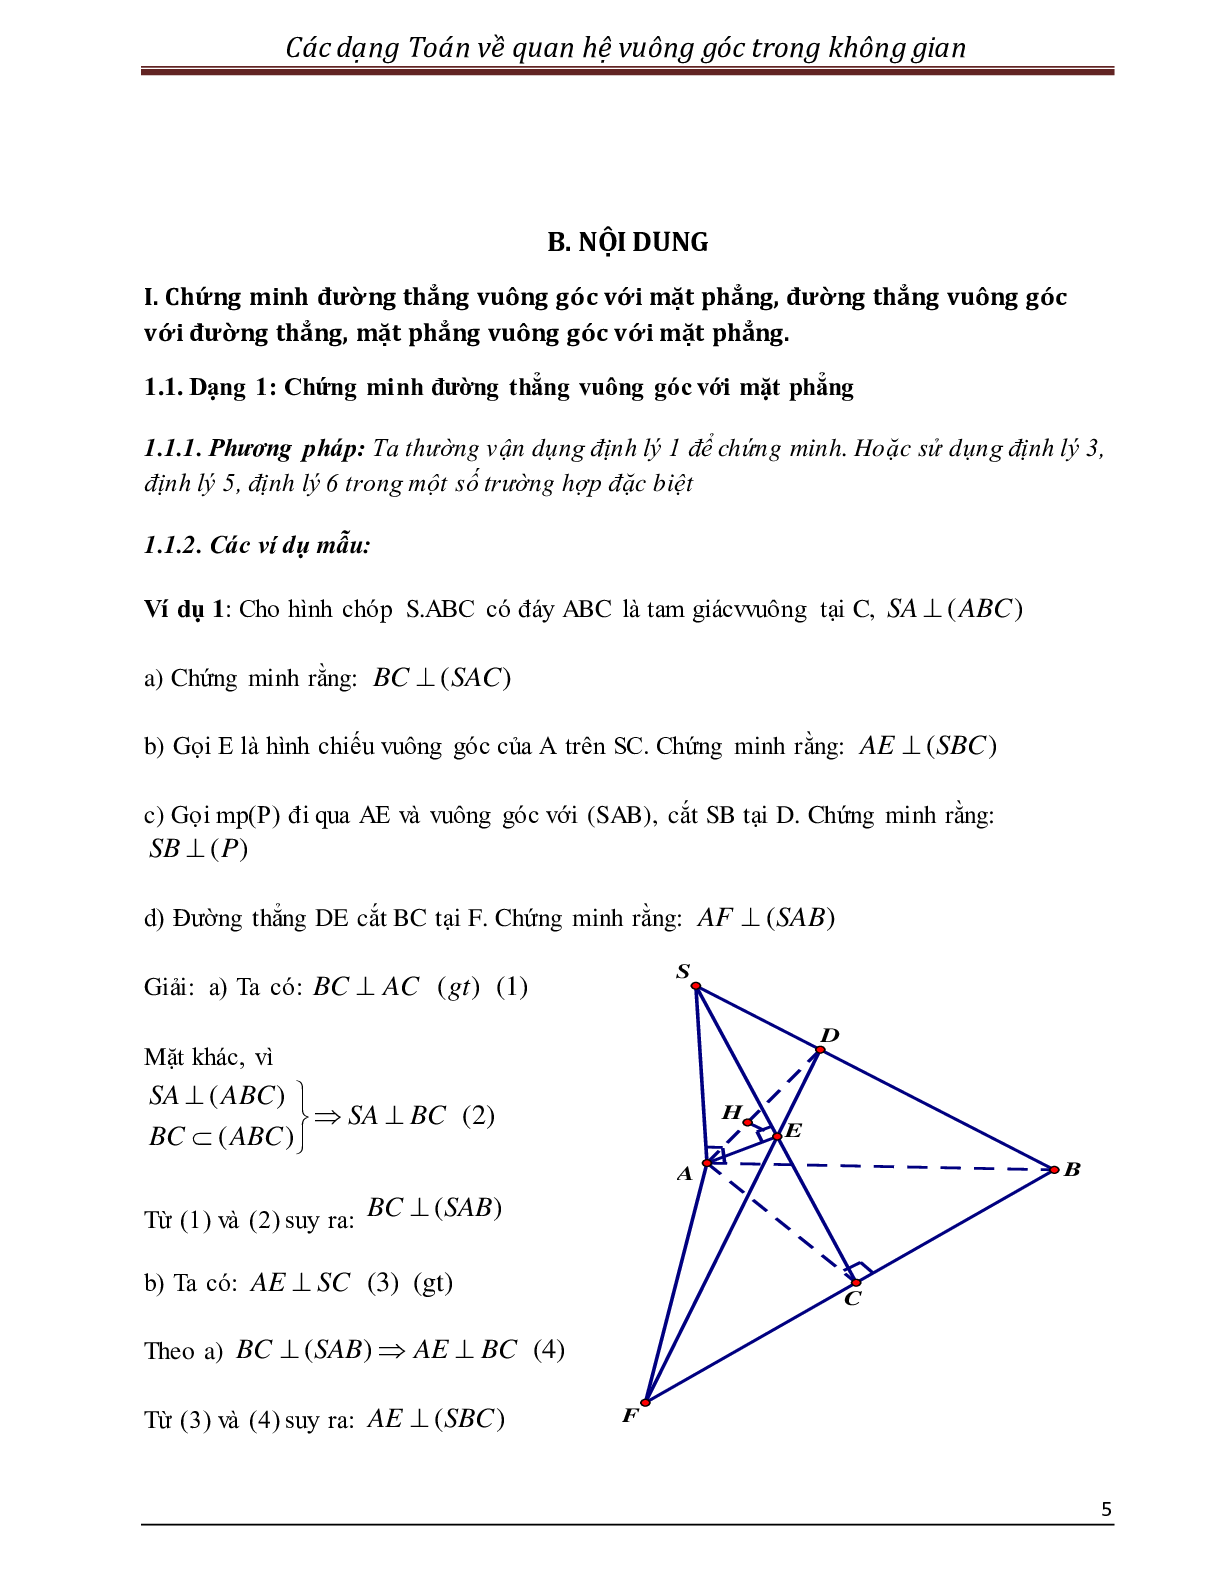 Các dạng toán quan hệ vuông góc trong không gian (trang 5)